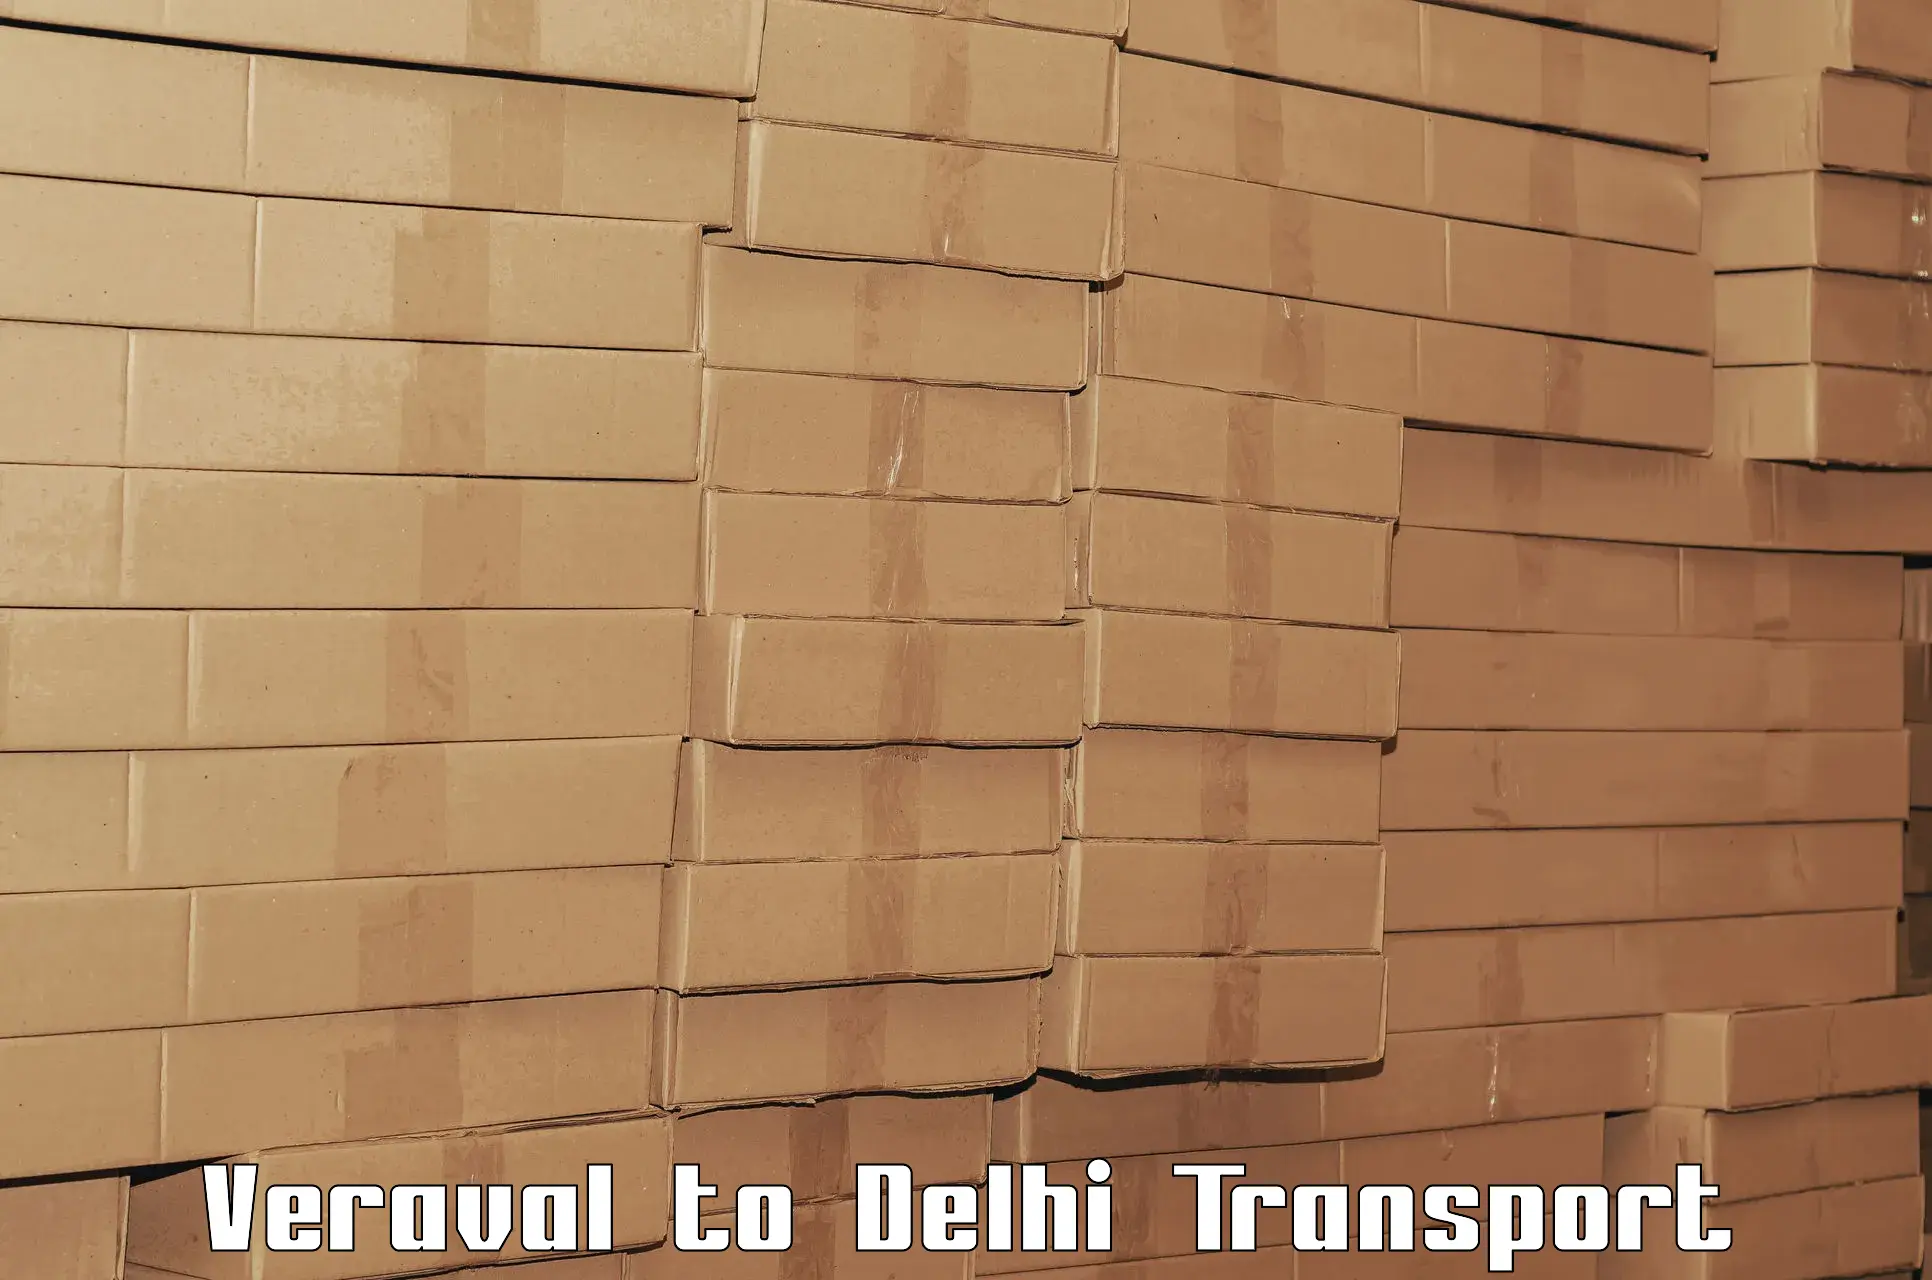 Daily transport service Veraval to Jamia Millia Islamia New Delhi